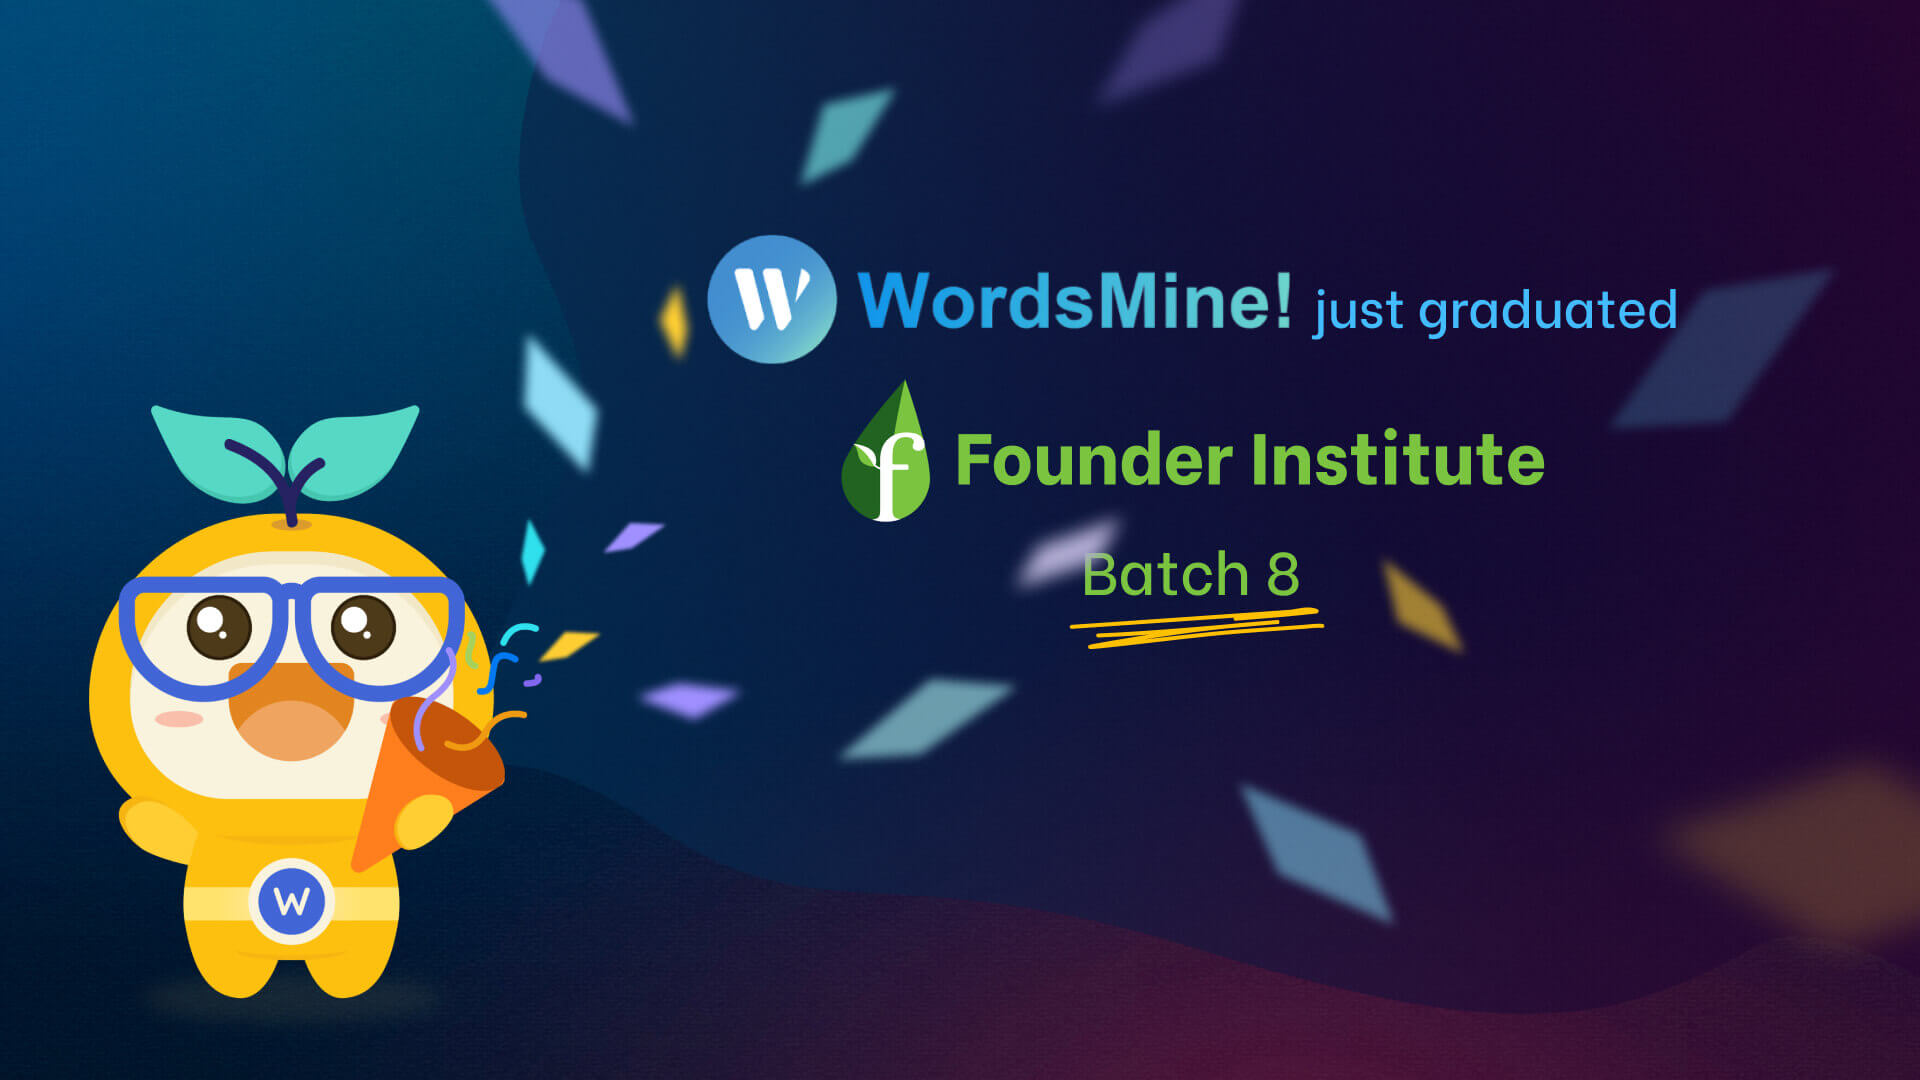 WordsMine graduated Founder Institute